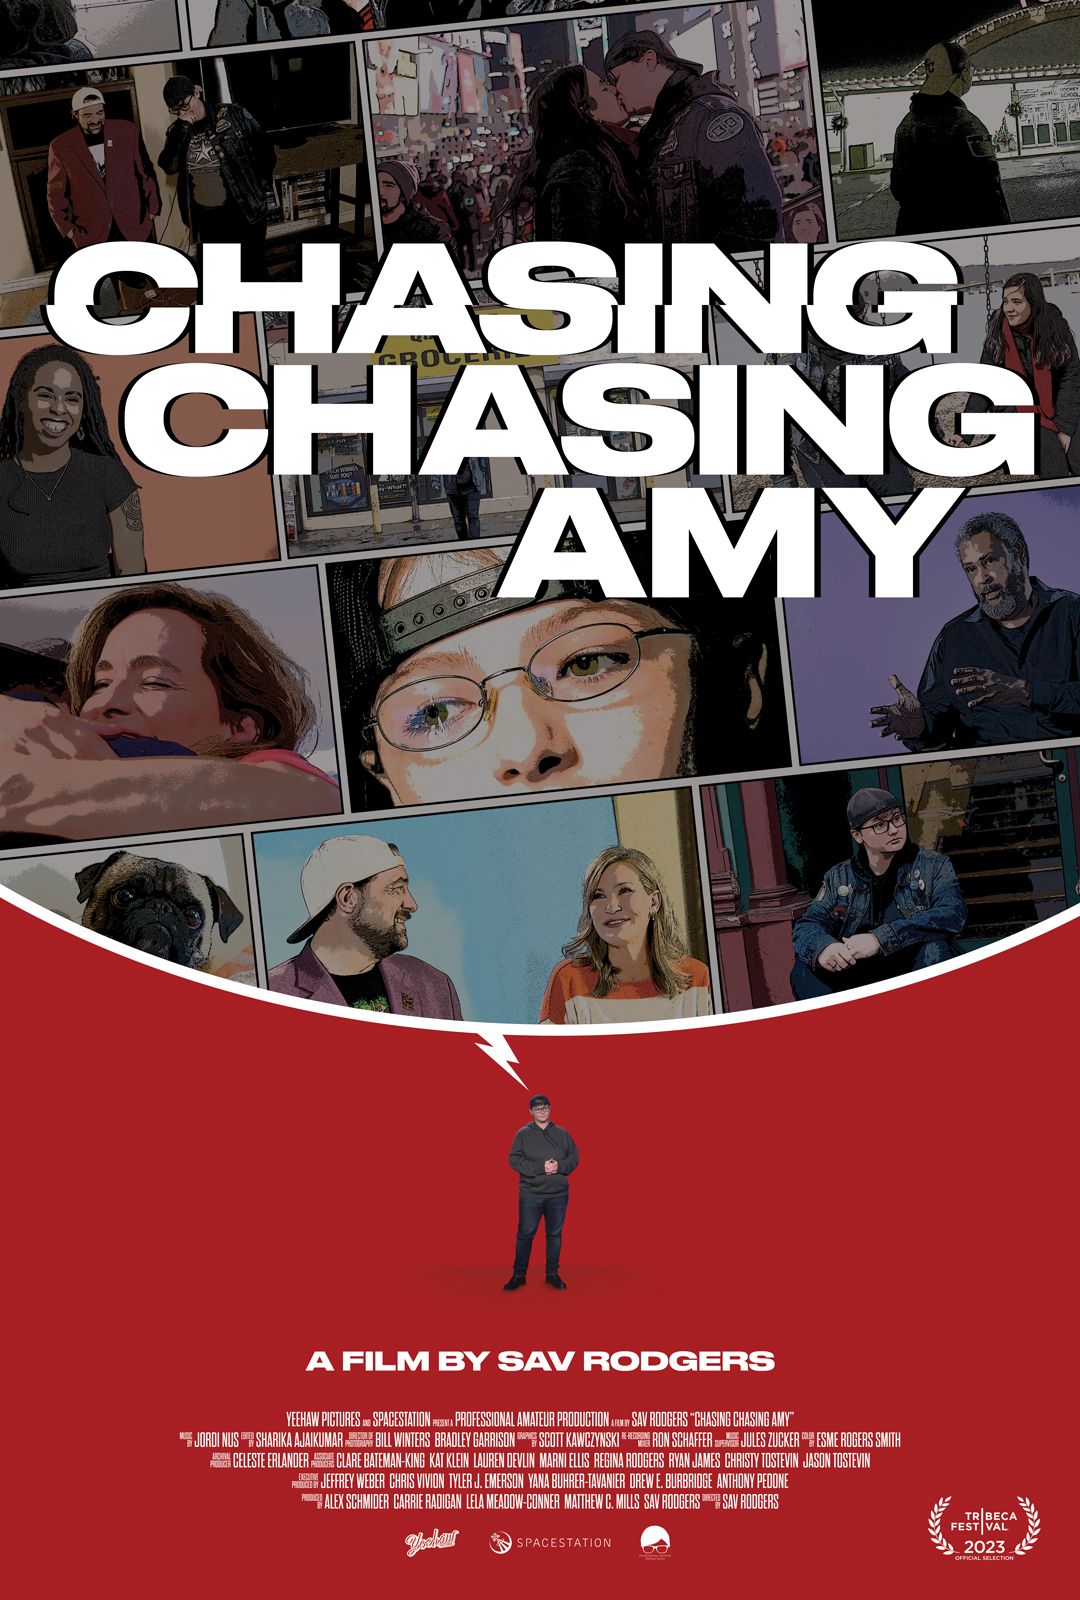 L’affiche « Chasing Chasing Amy » illustre le parcours de découverte de soi d’un homme